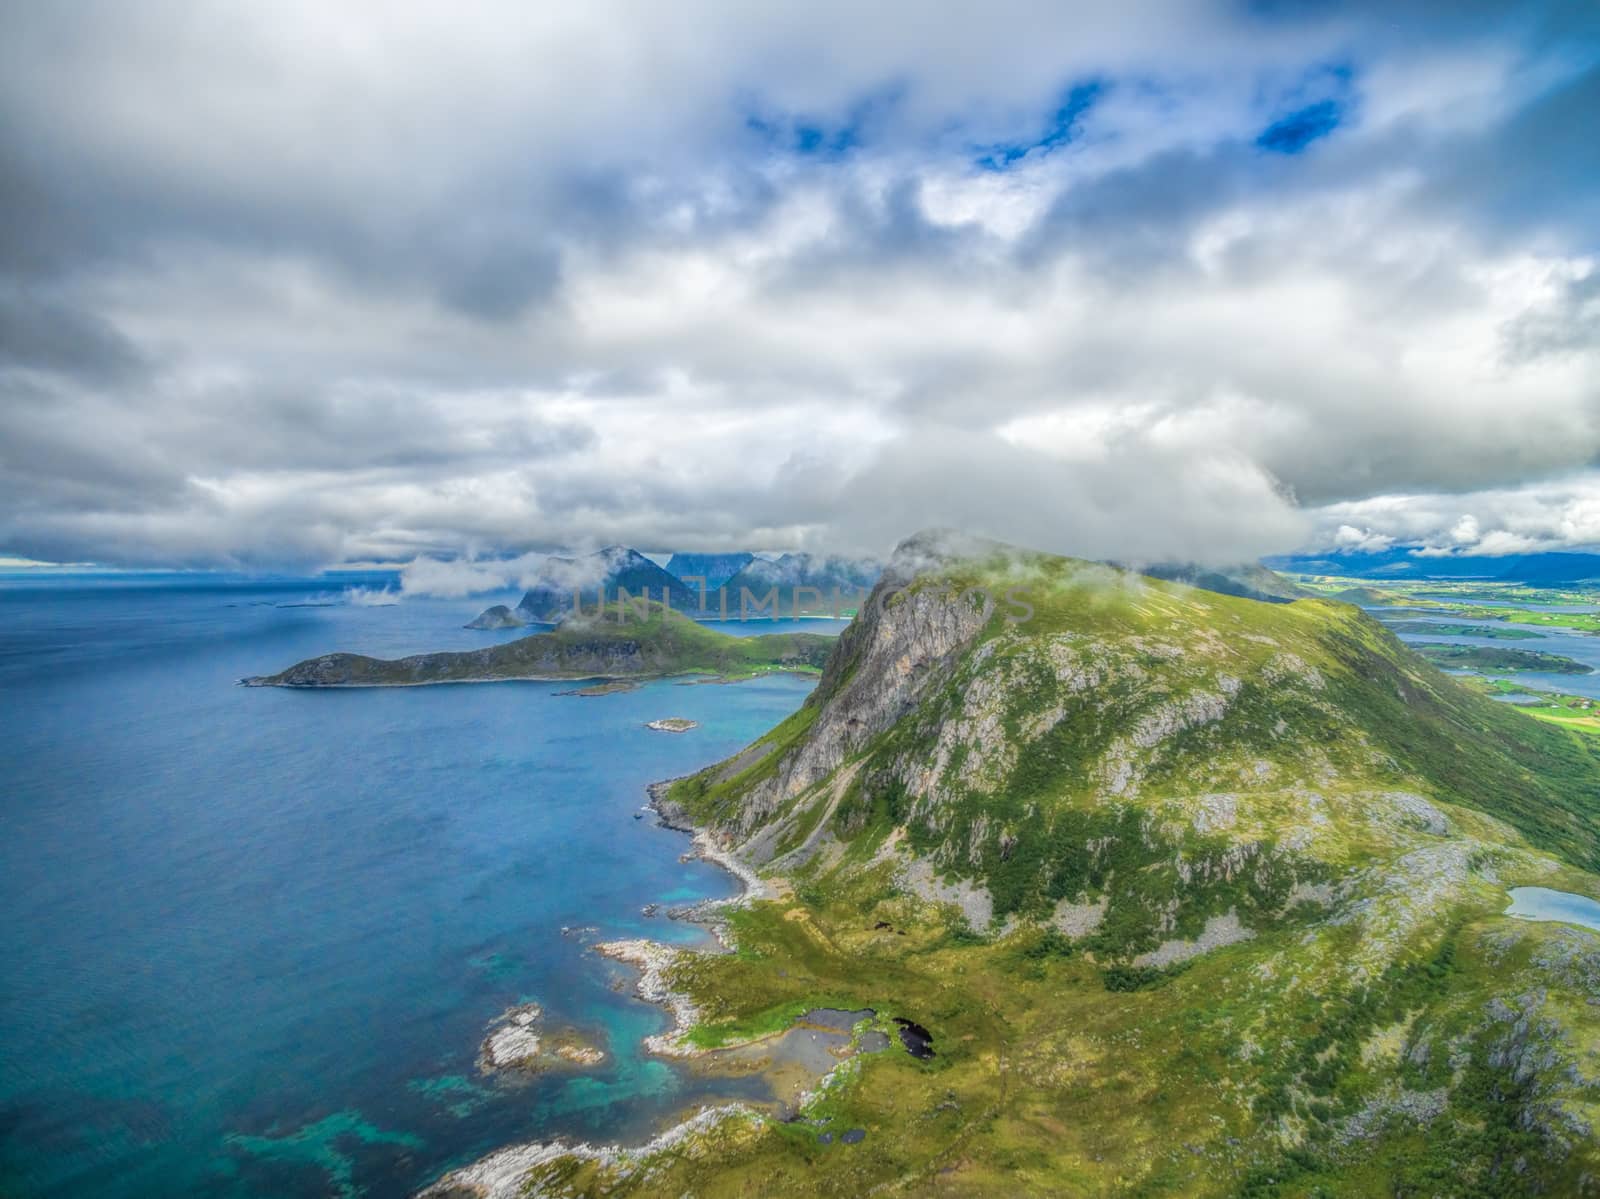 Picturesque aerial view of Lofoten islands in Norway